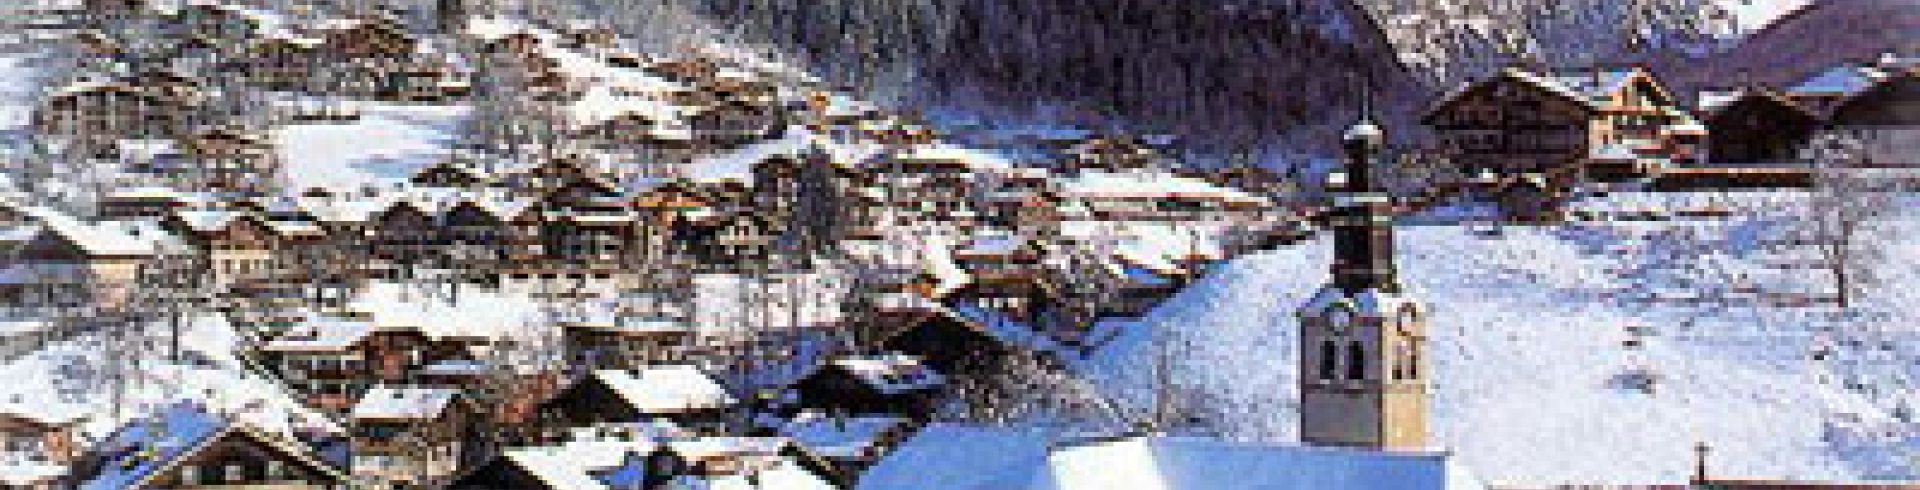 Station de ski de Morzine